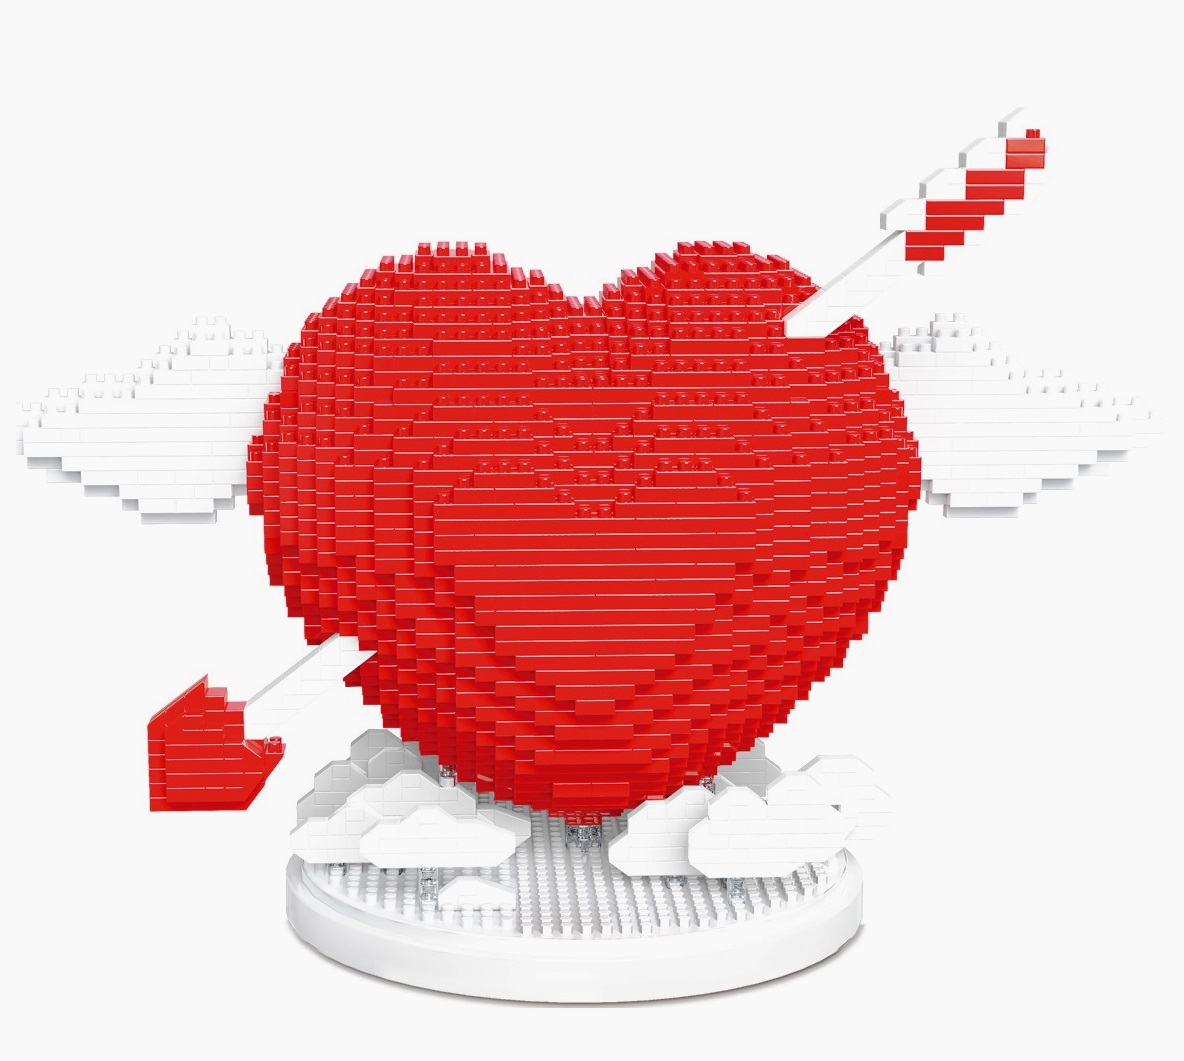 3D конструктор из миниблоков Daia копилка Любовь Сердце со стрелой Красное DI668-15-01